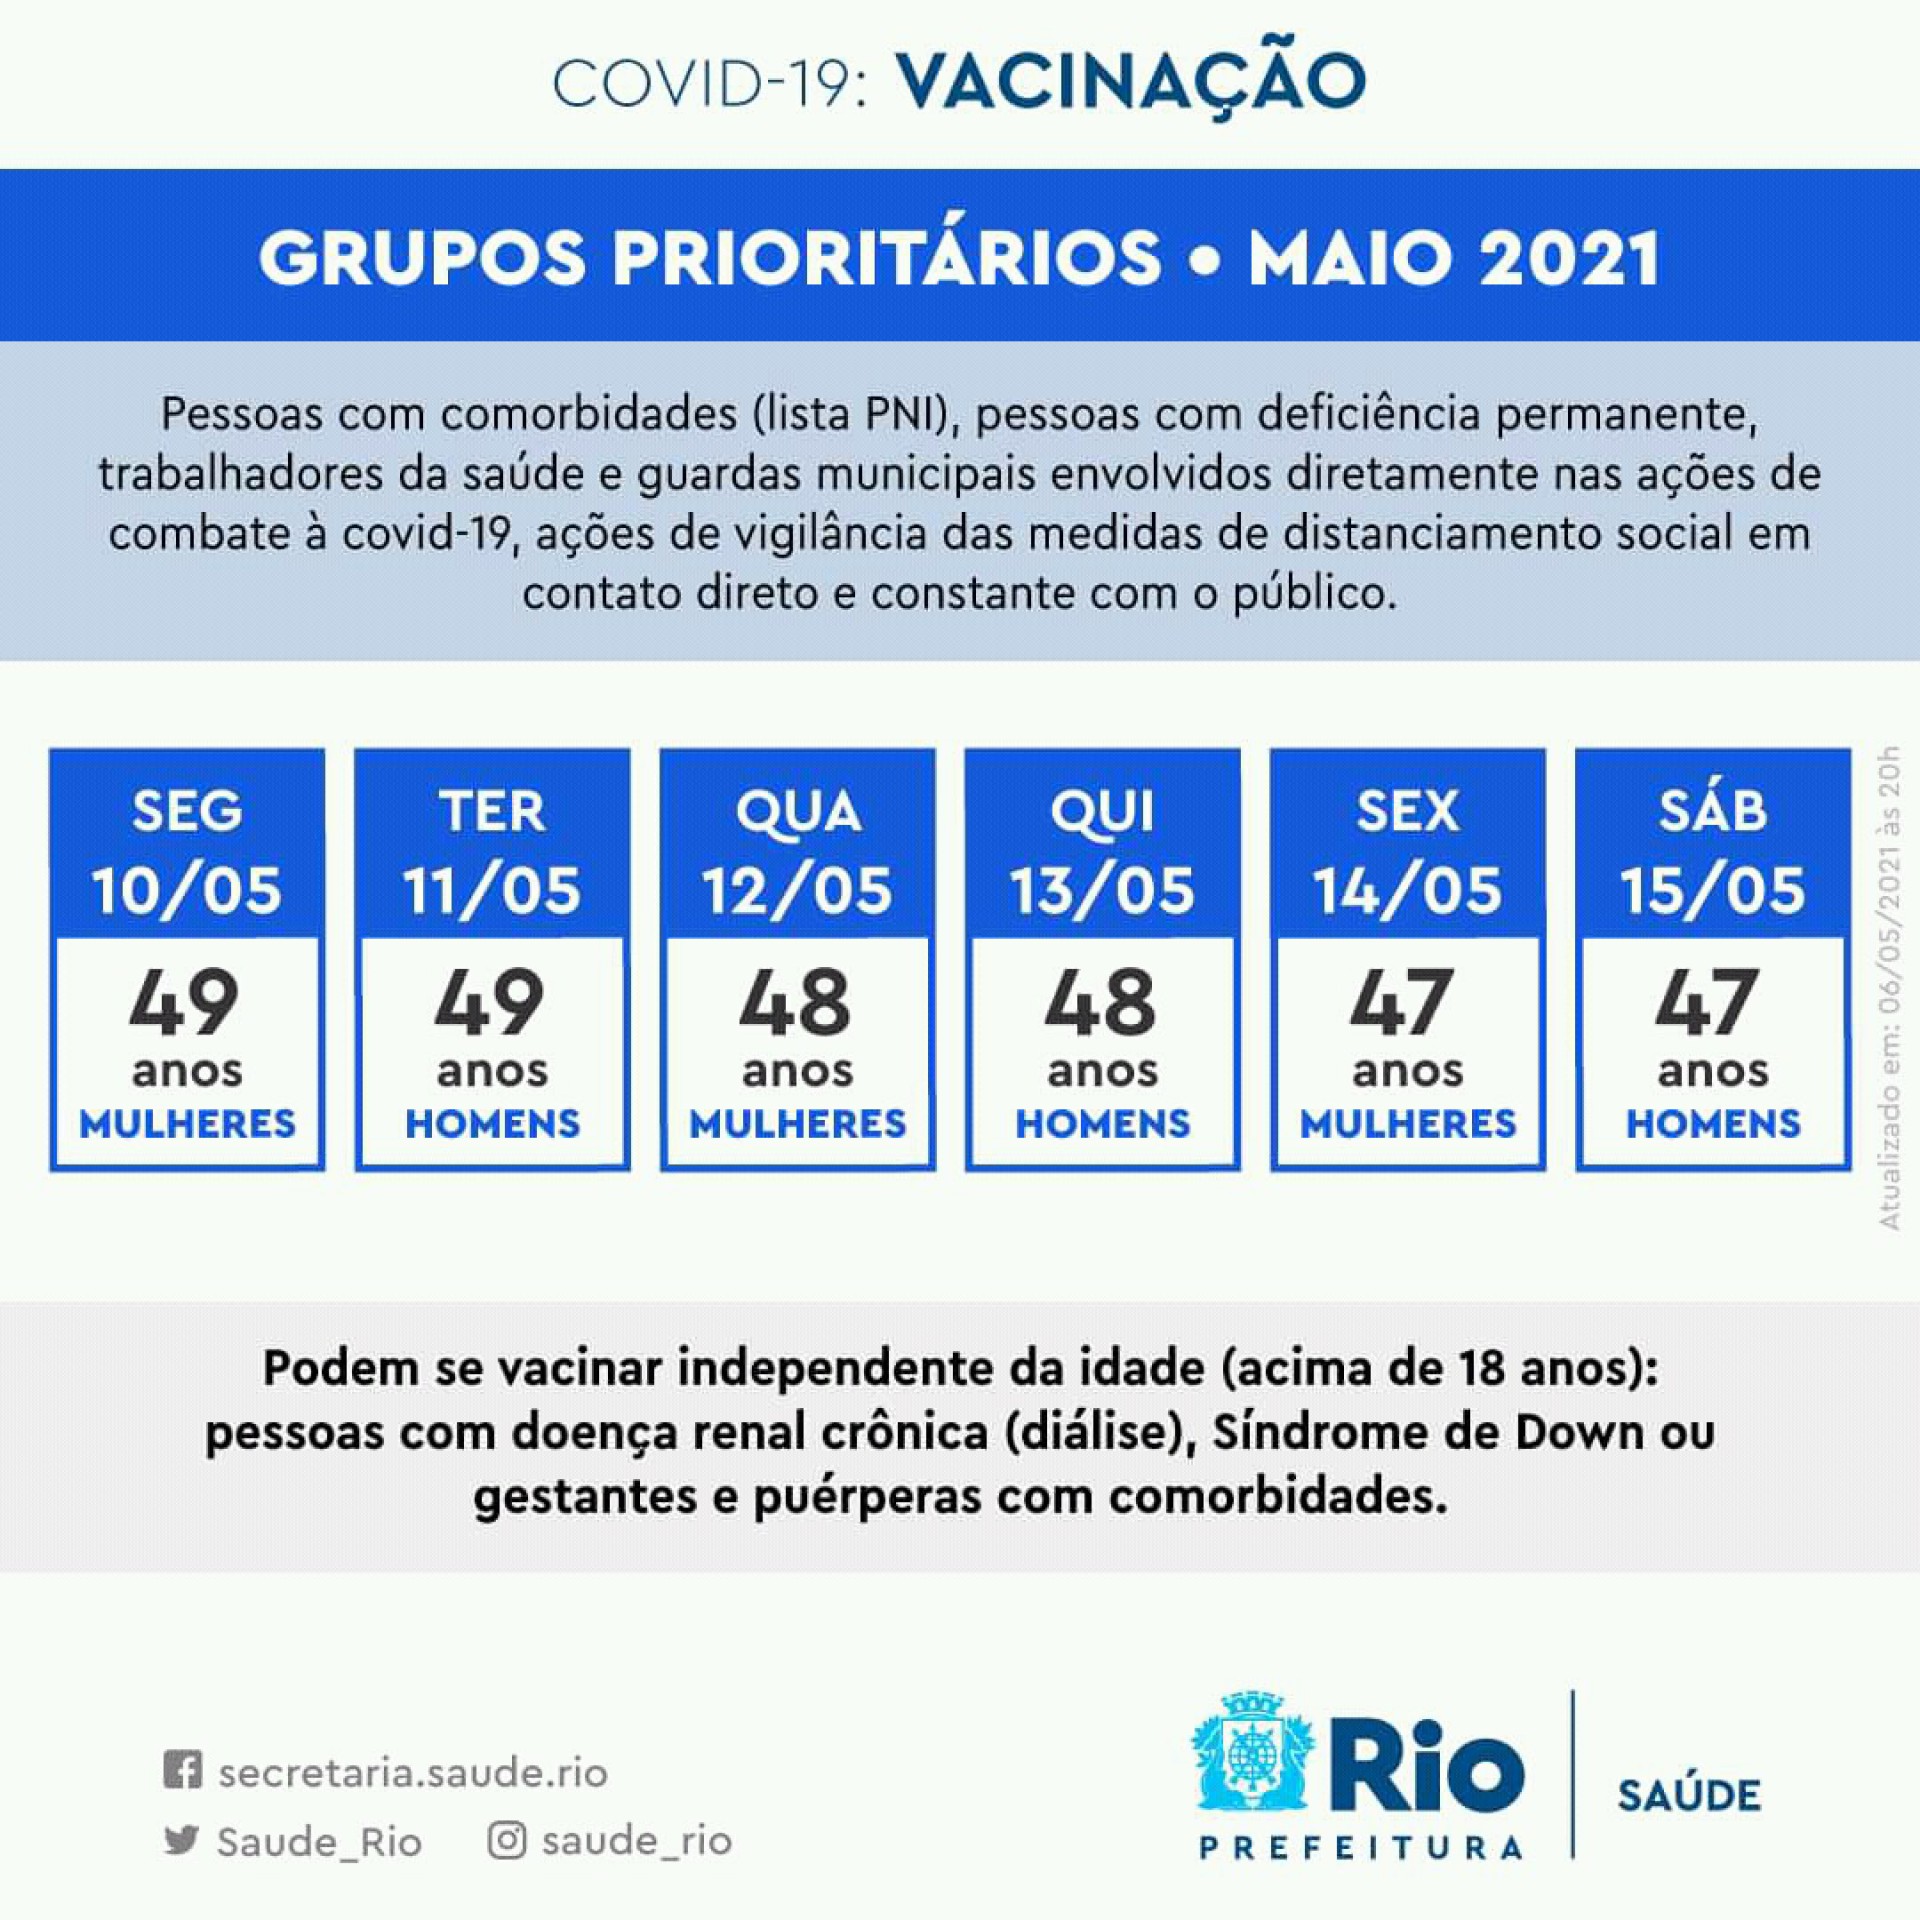 Calendário de vacinação para grupos prioritários no Município do Rio - Divulgação/Prefeitura do Rio